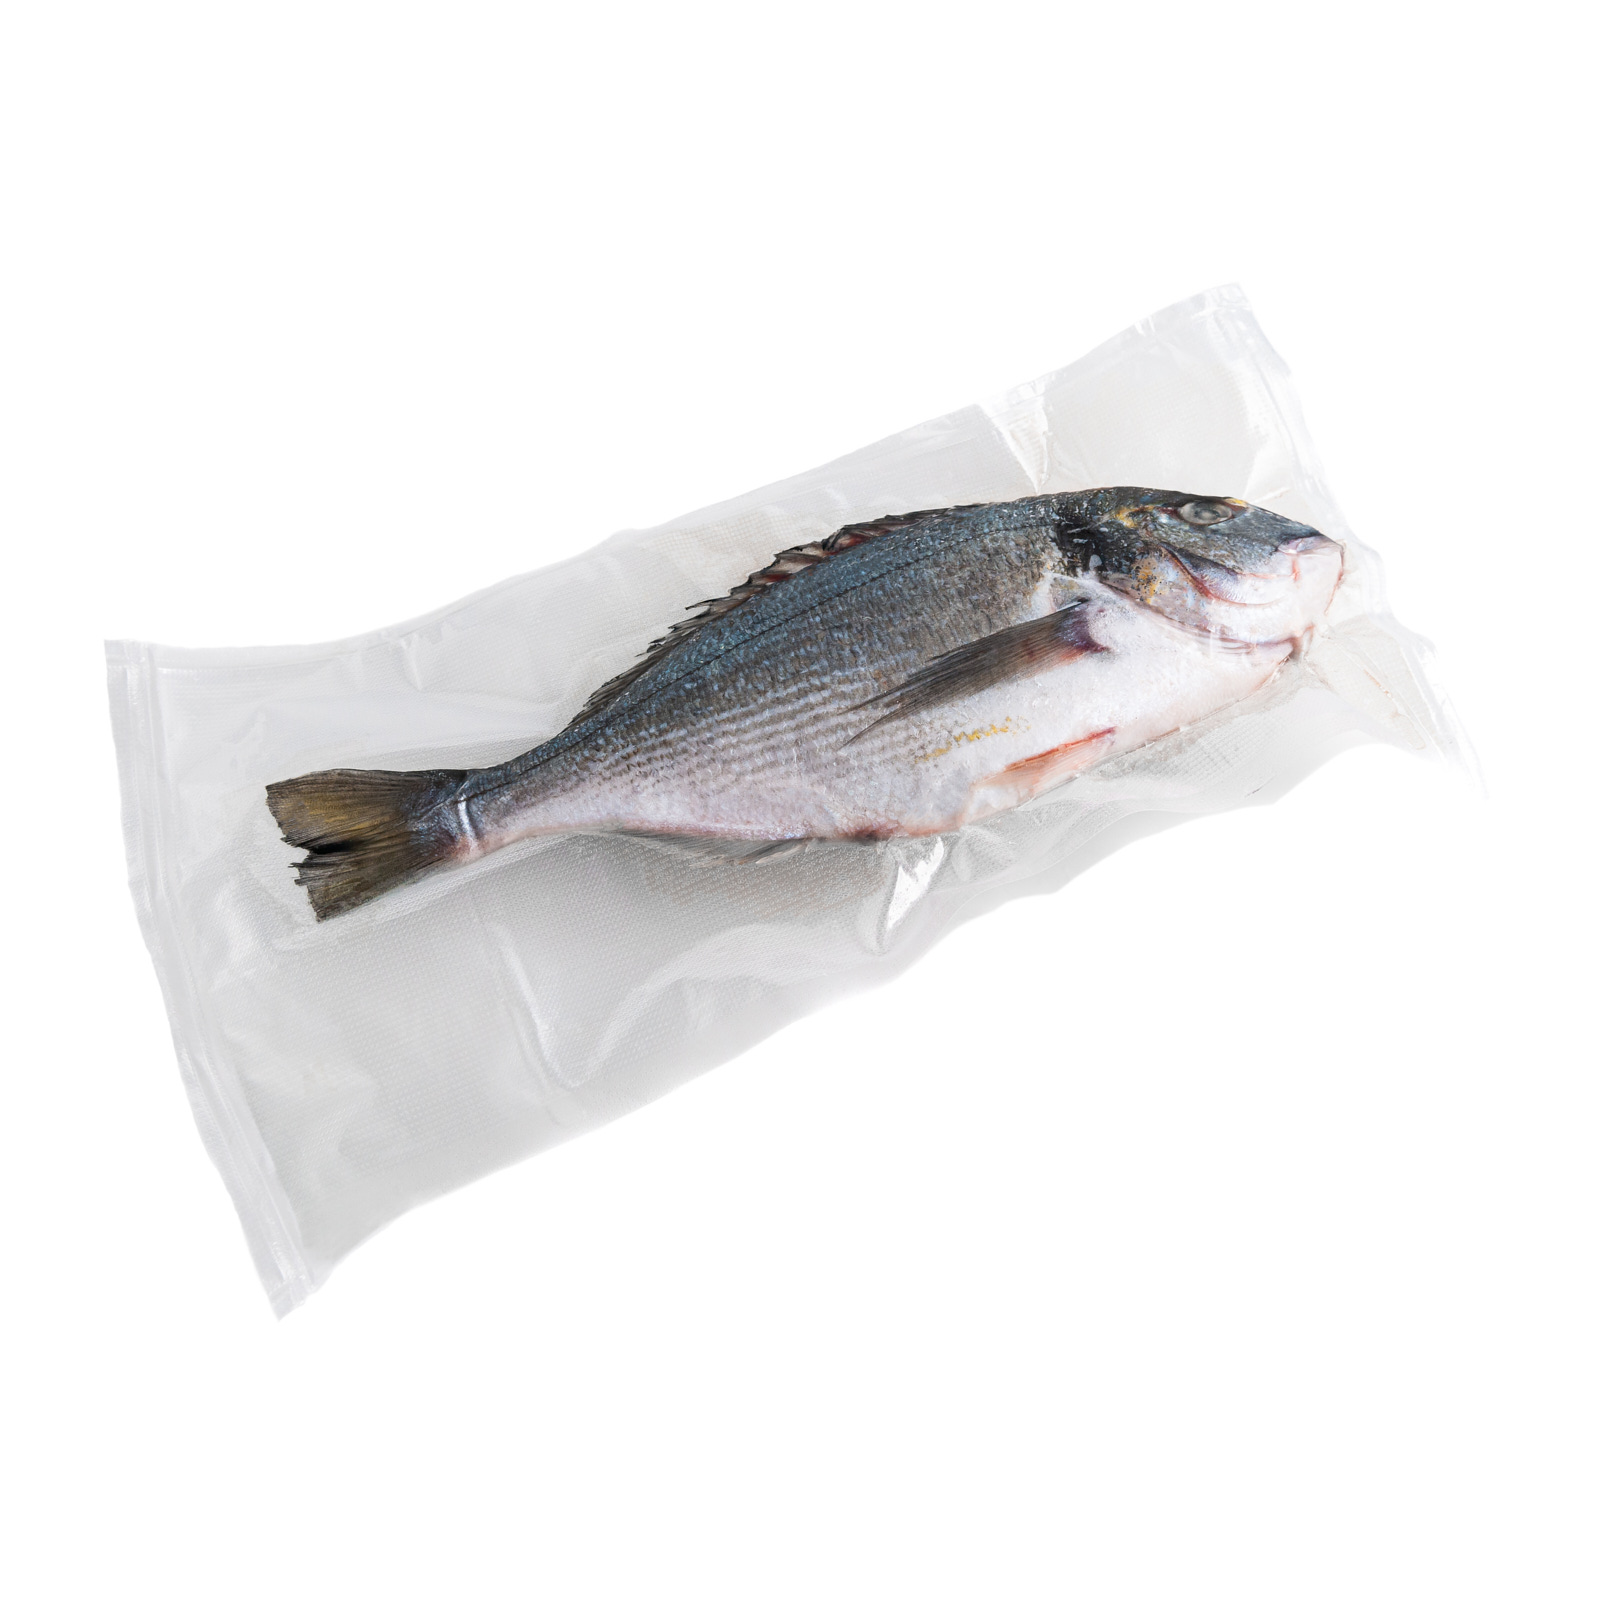 Замороженная рыба из Турции
Размер рыбки от 300 до 400 грамм.
В пакете 3 рыбки, с чушуей и не потрошеные.
Товар весовой.